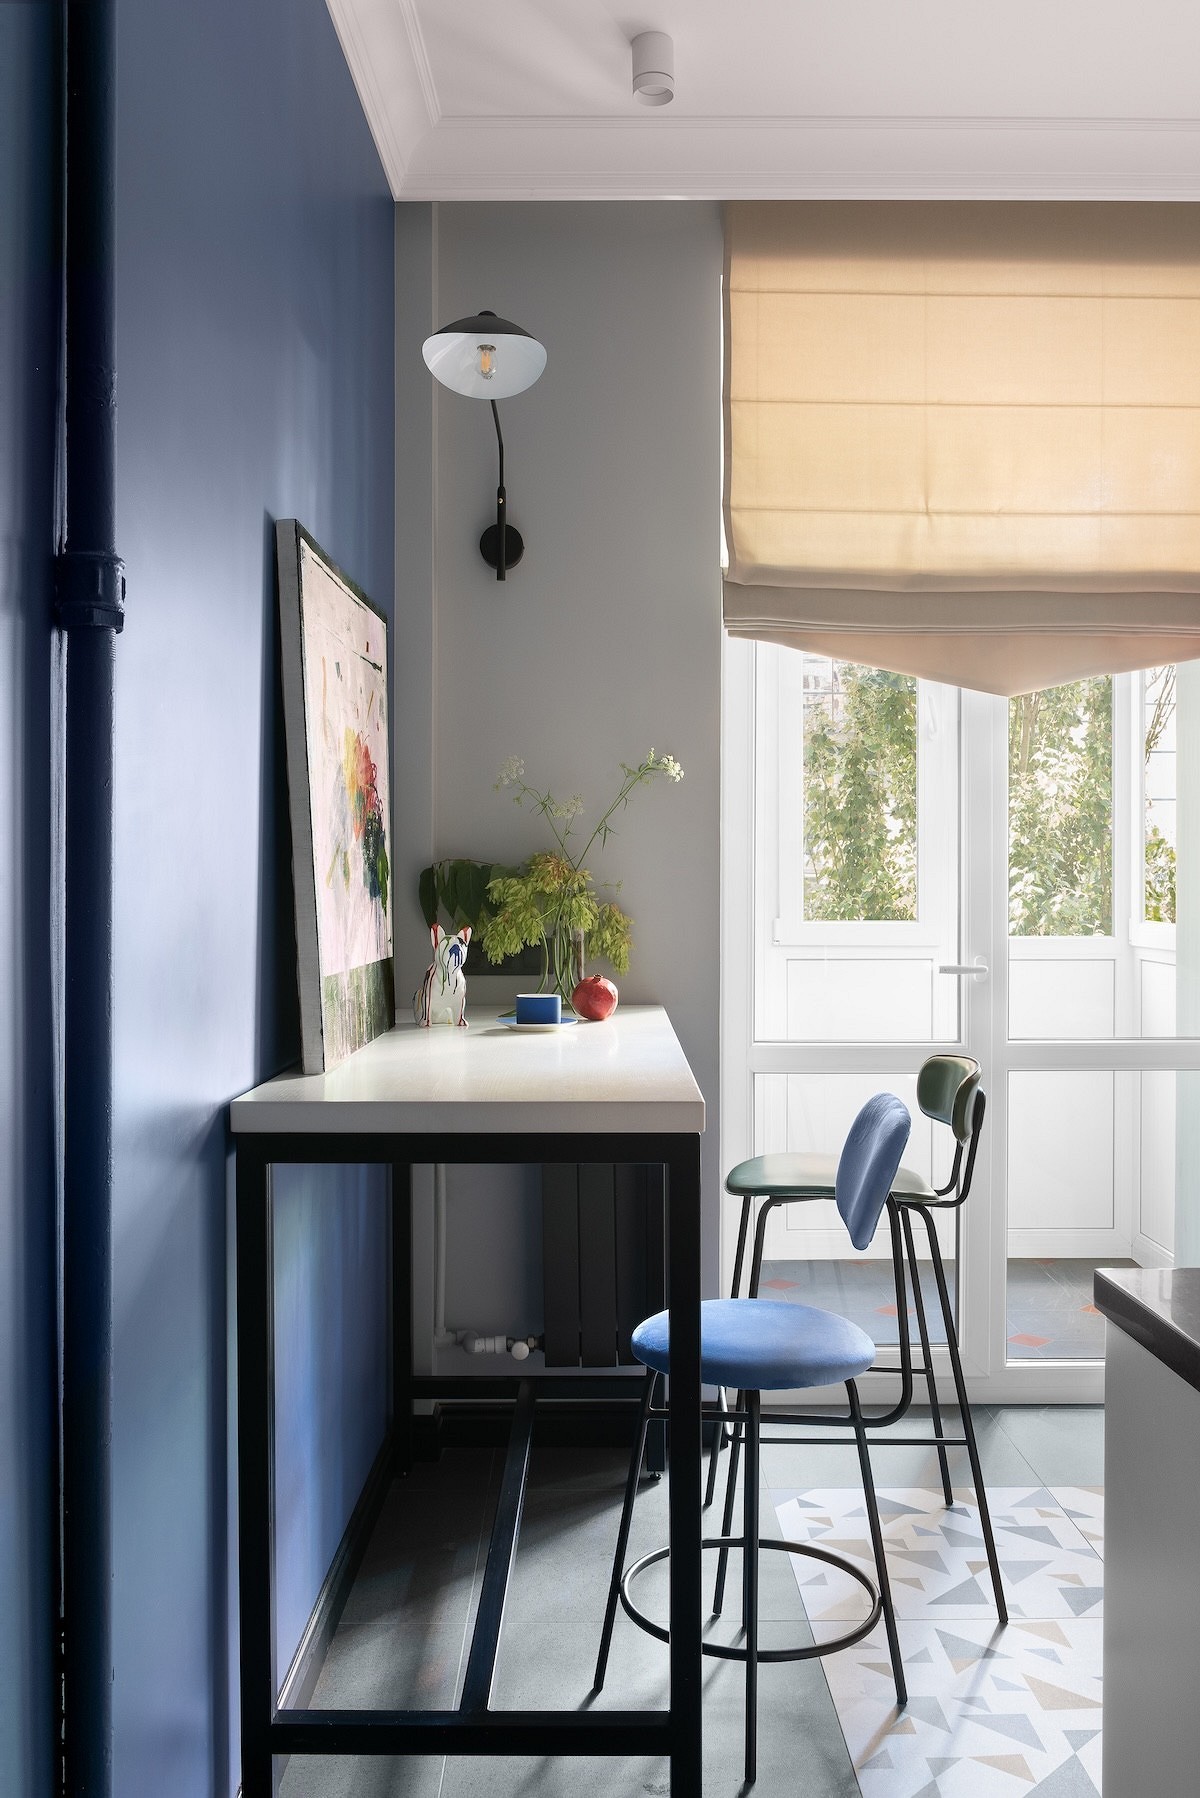 Как поставить стол на маленькой кухне? 8 вариантов с планировками от дизайнеров21